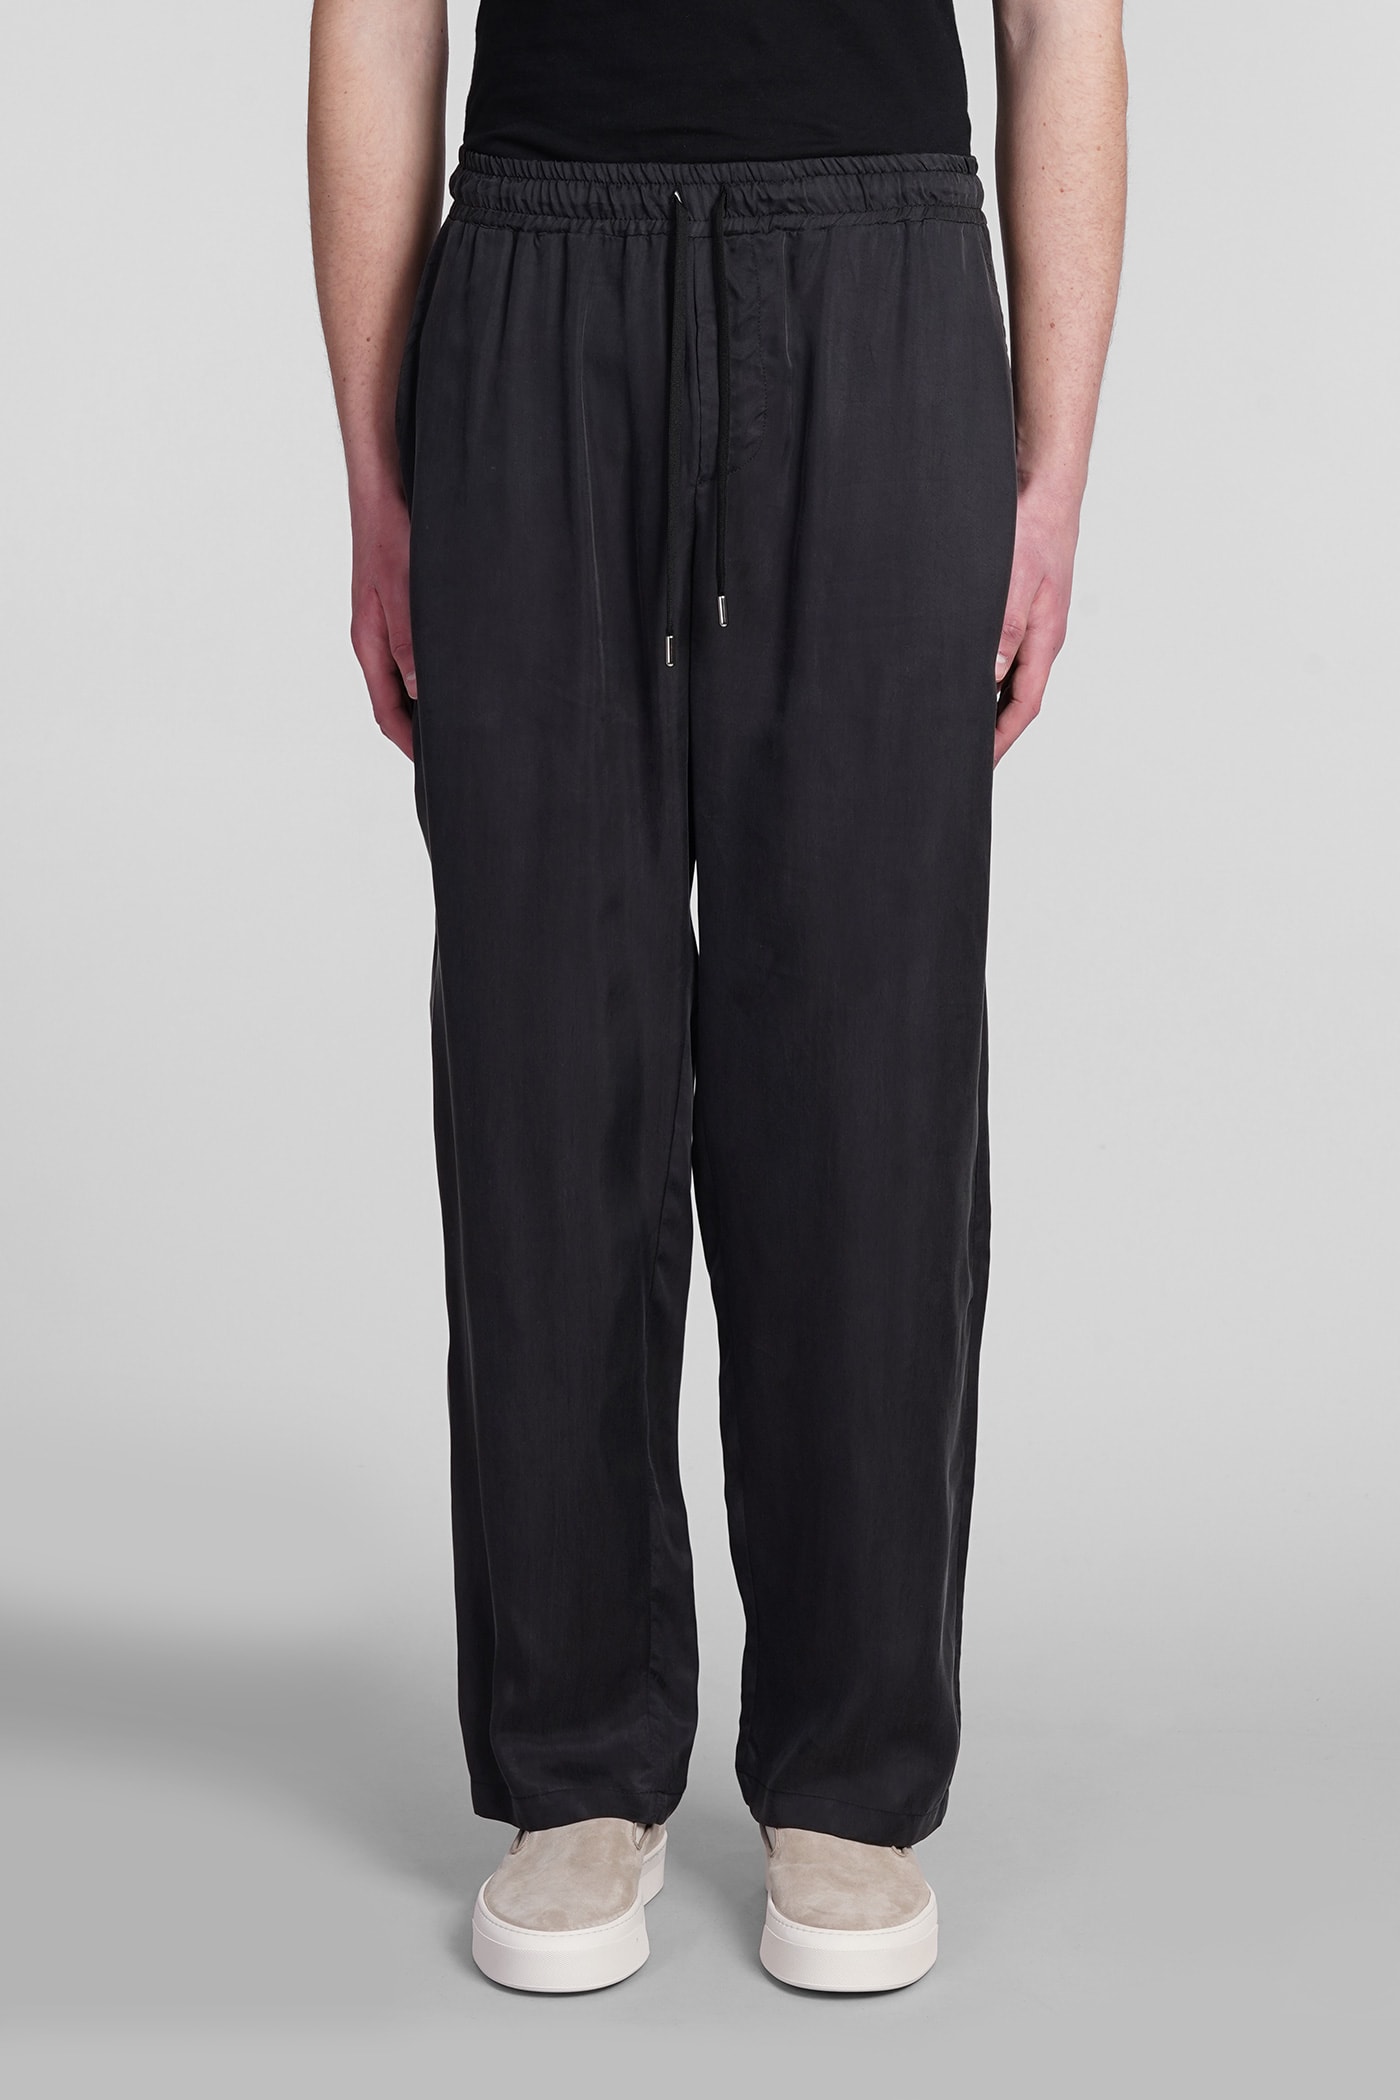 Otaru Pants In Black Polyamide Polyester